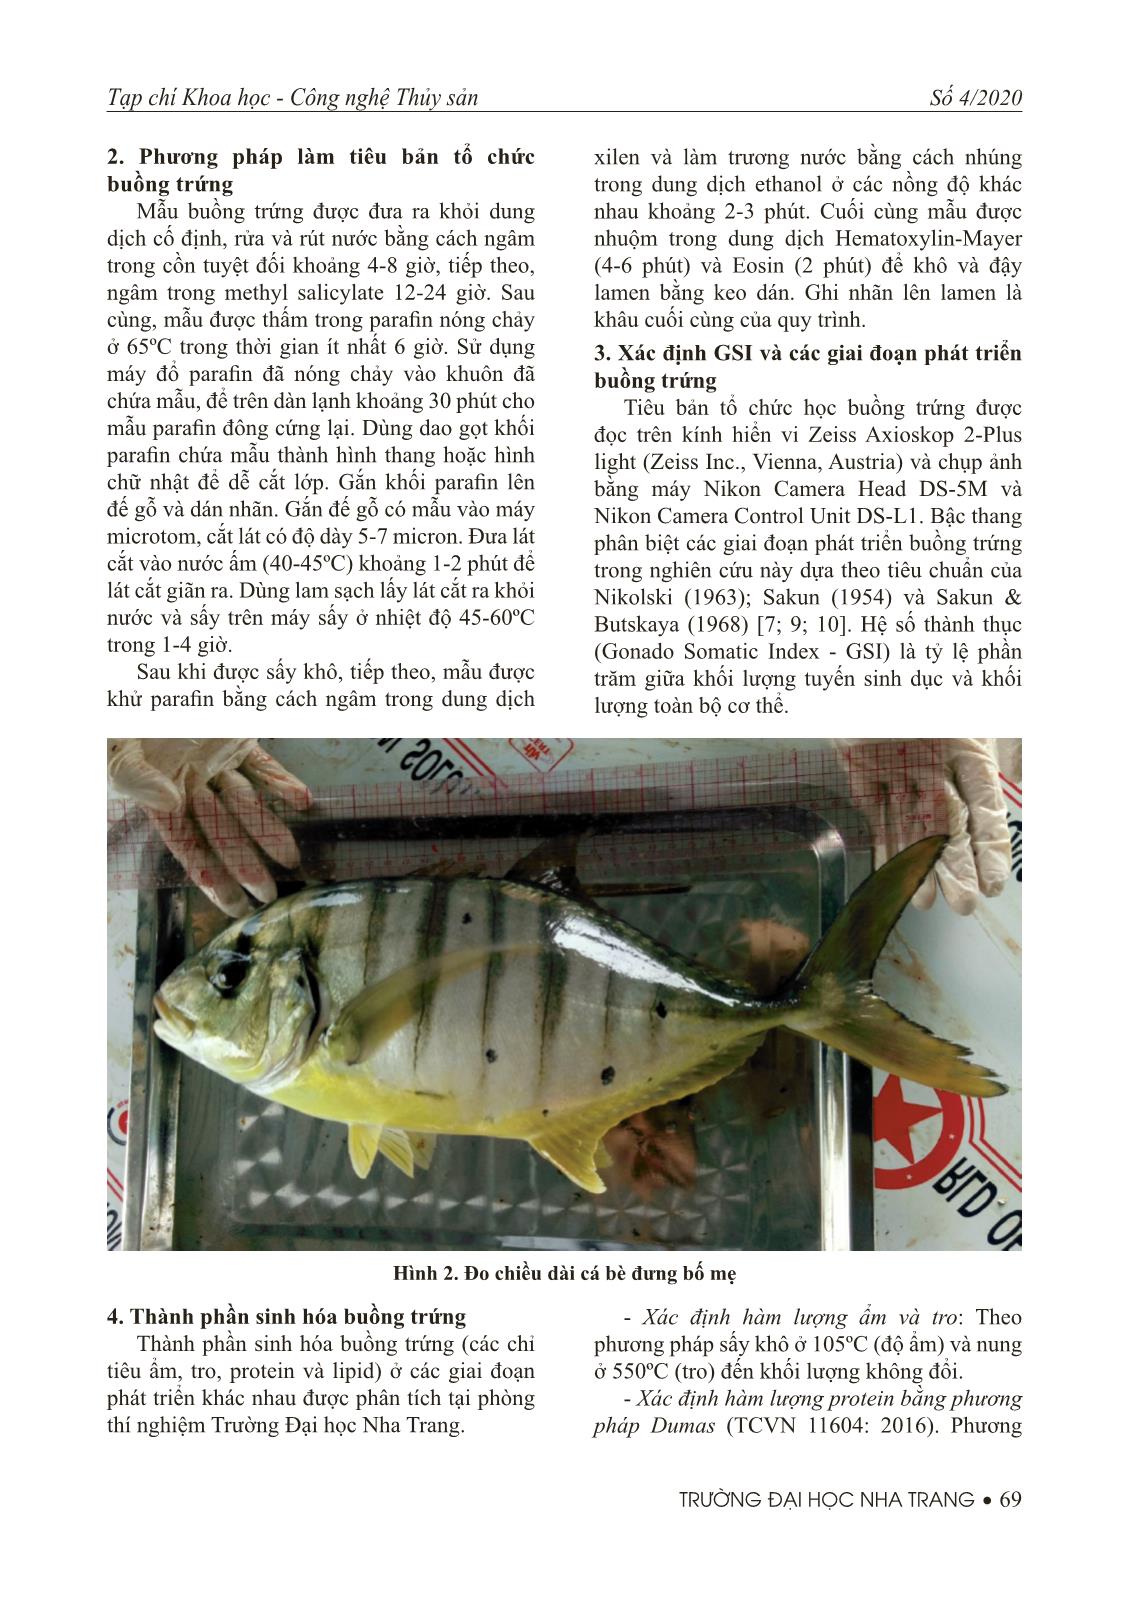 Nghiên cứu đặc điểm sinh học buồng trứng cá bè đưng (Gnathanodon speciosus) trang 3